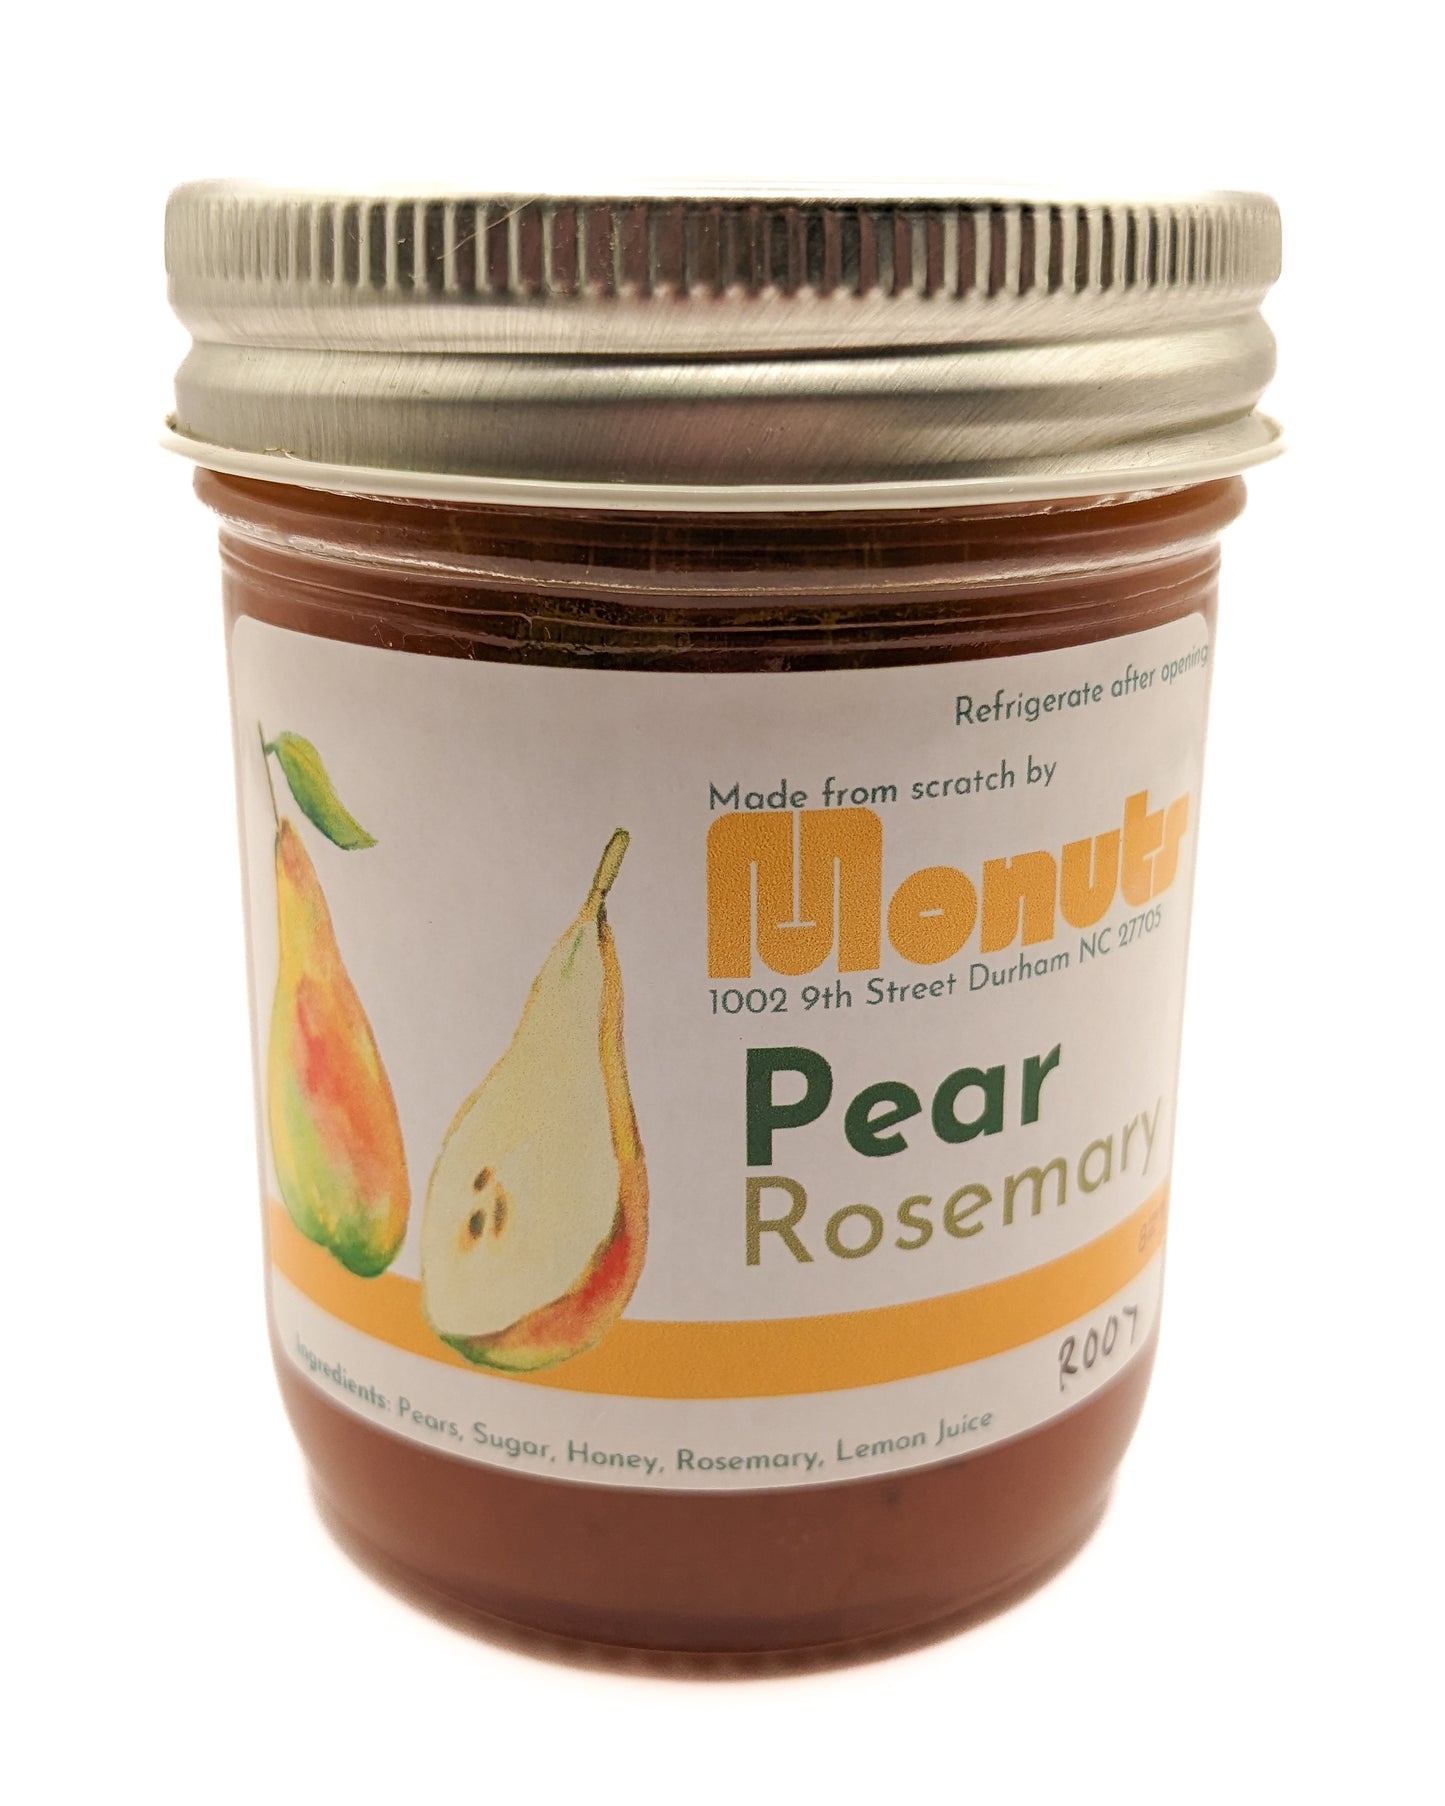 Pear Rosemary Jam